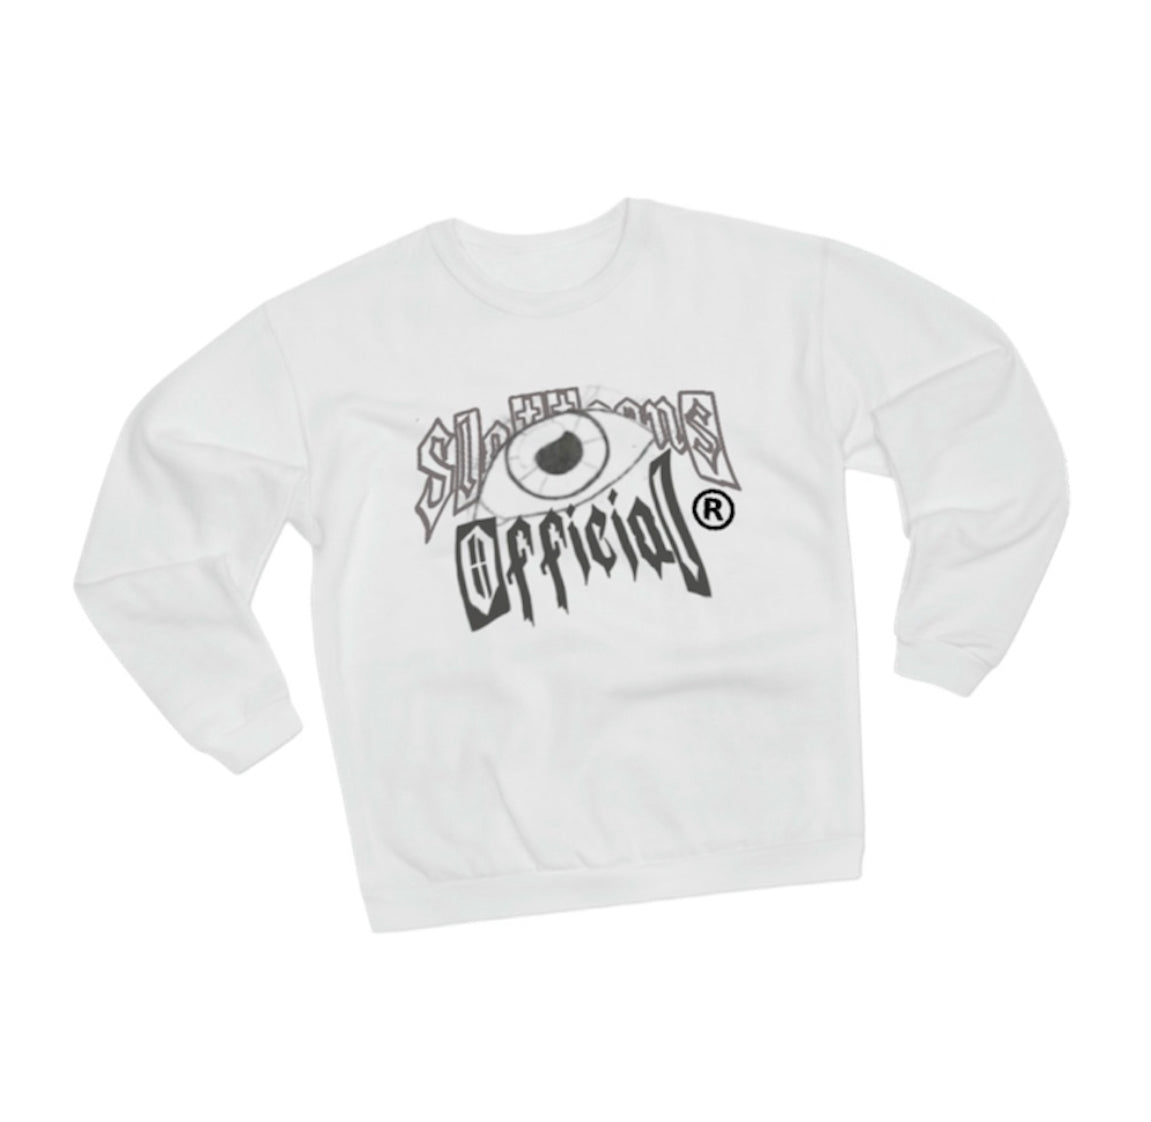 Slattoons Graphic Eye Sweatshirt